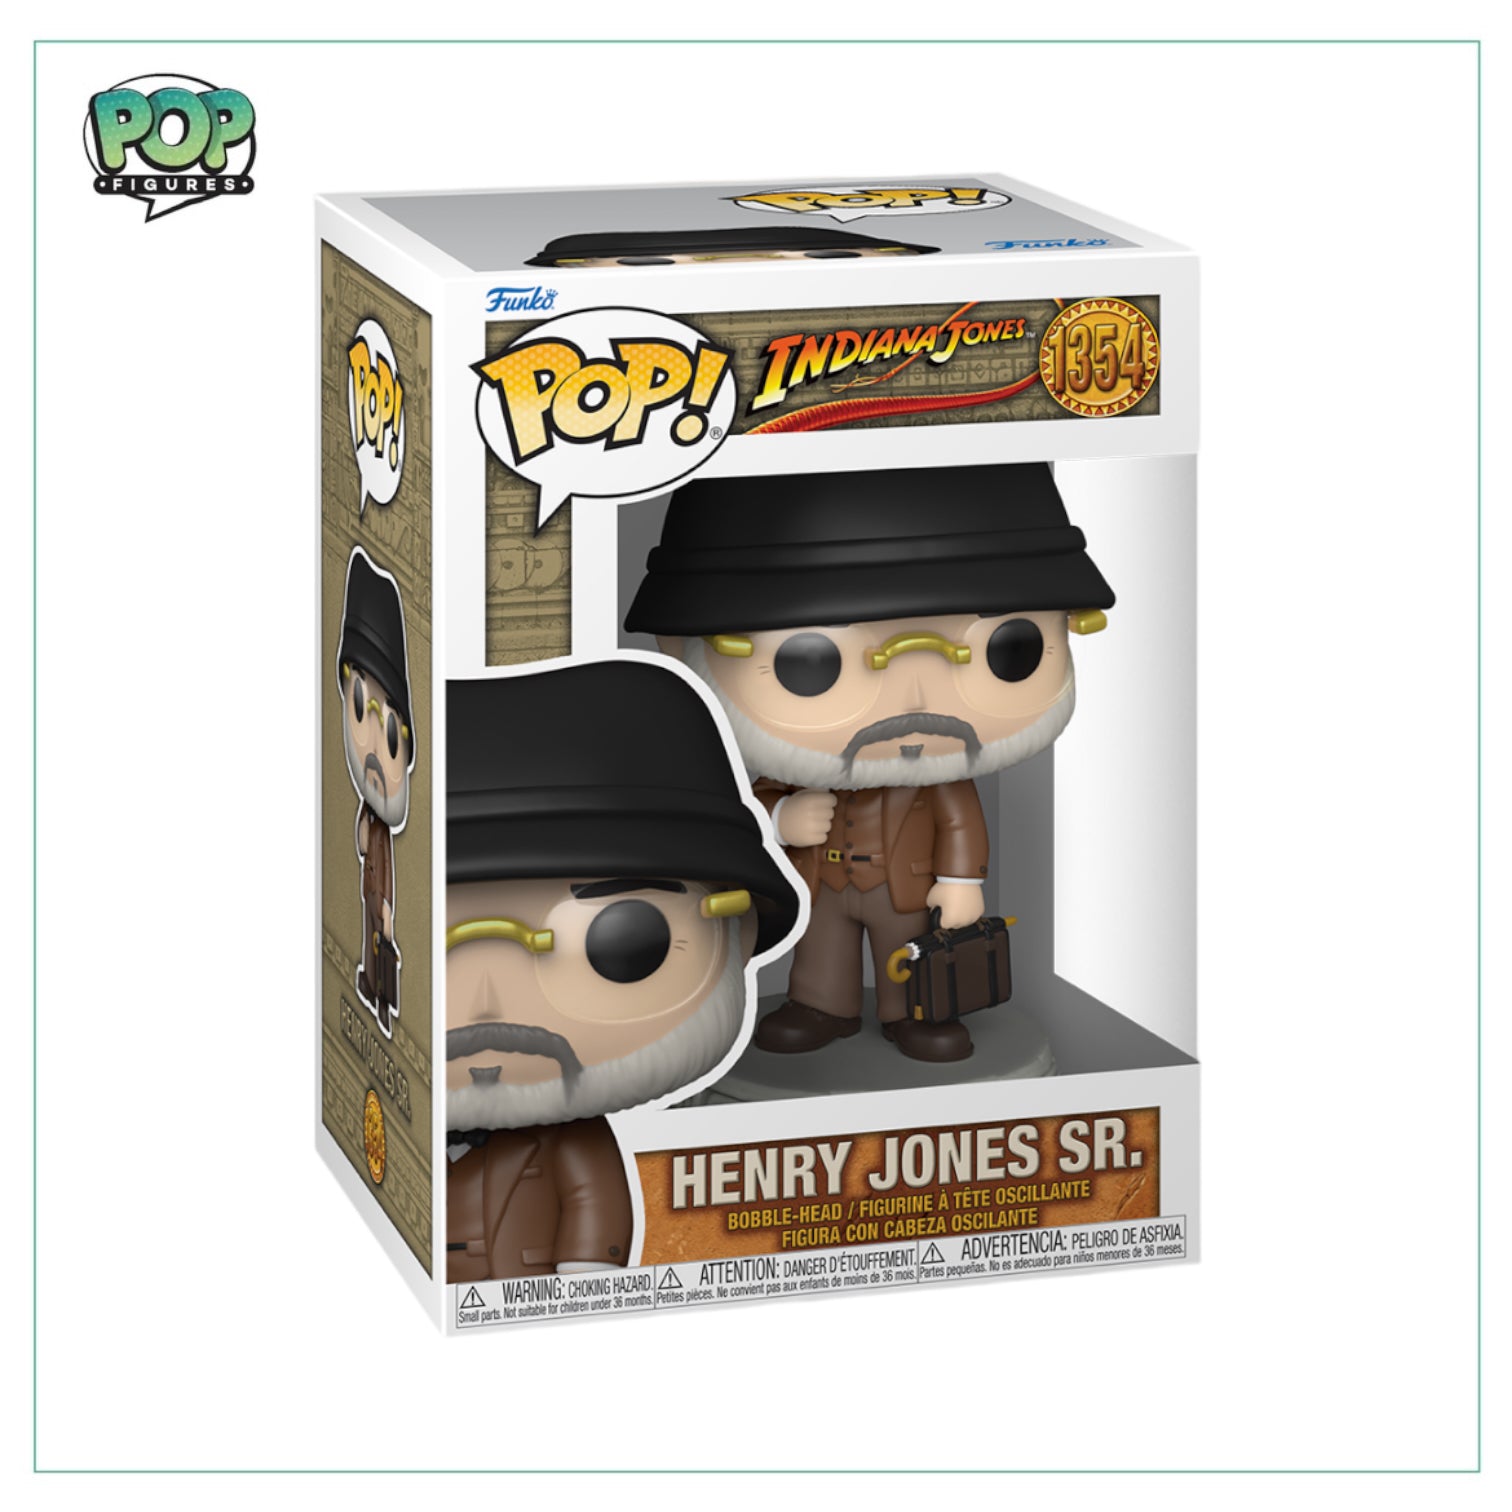 Henry Jones Sr. #1354 Funko Pop! Indiana Jones